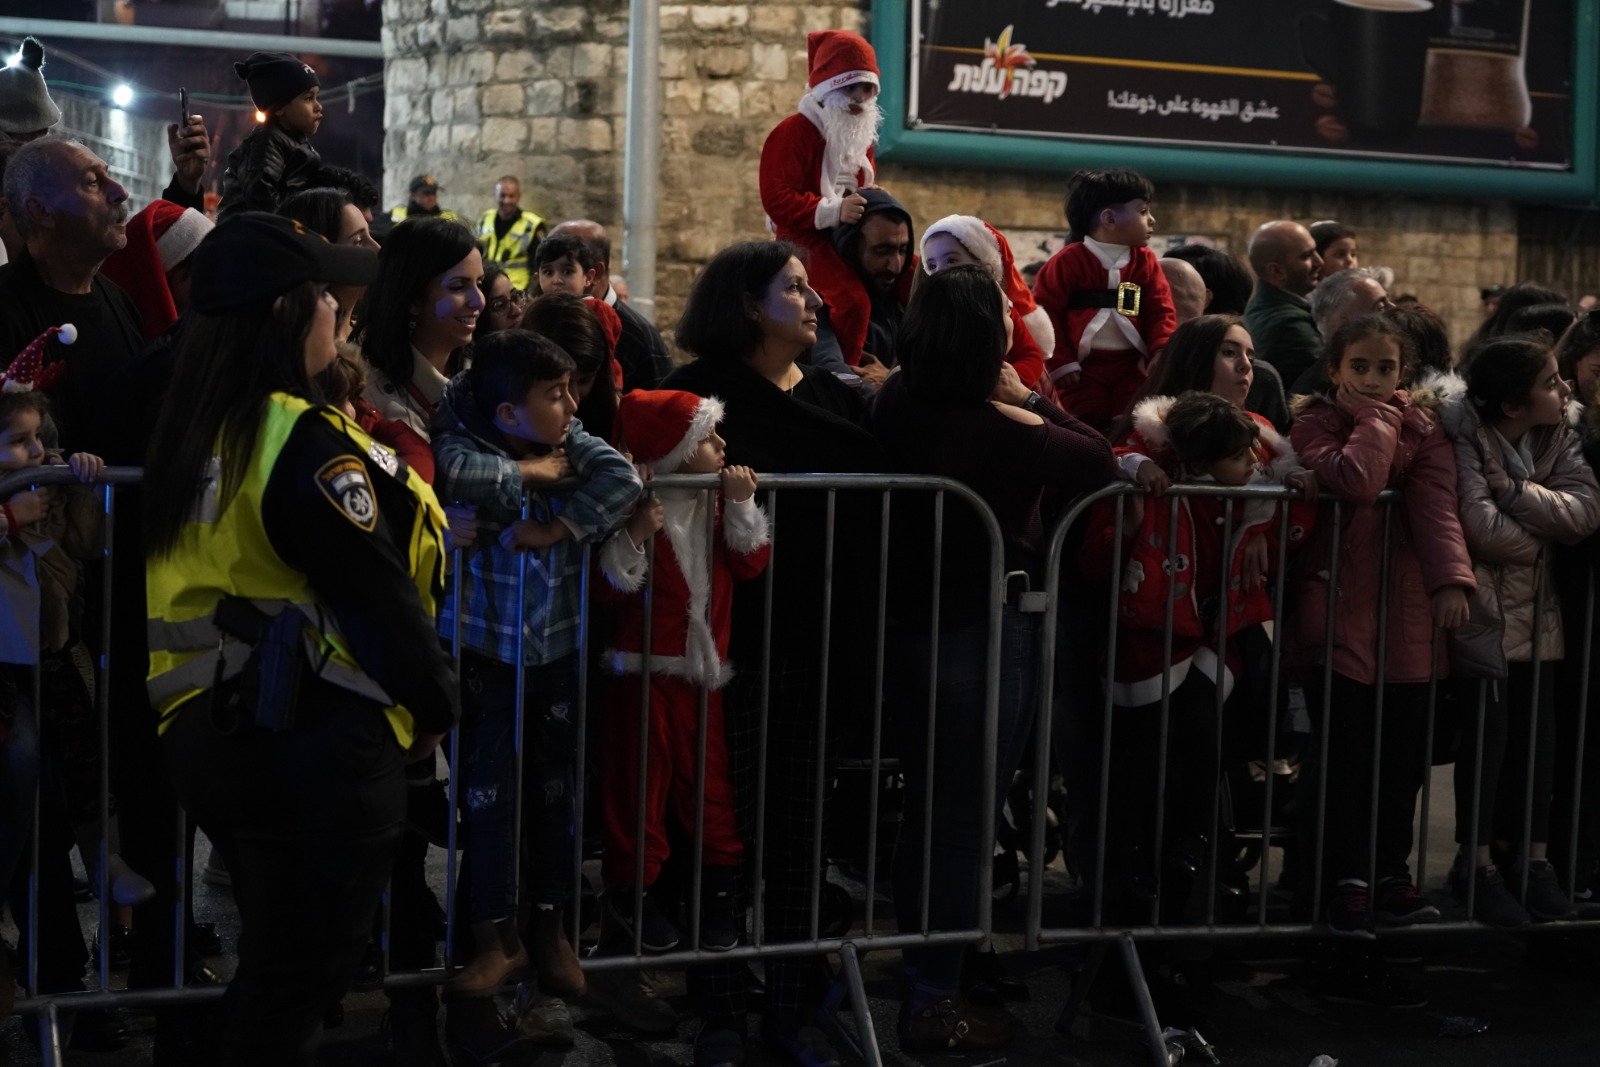 بالصور: "بكرا" يرصد فرحة استقبال الميلاد في الناصرة -166